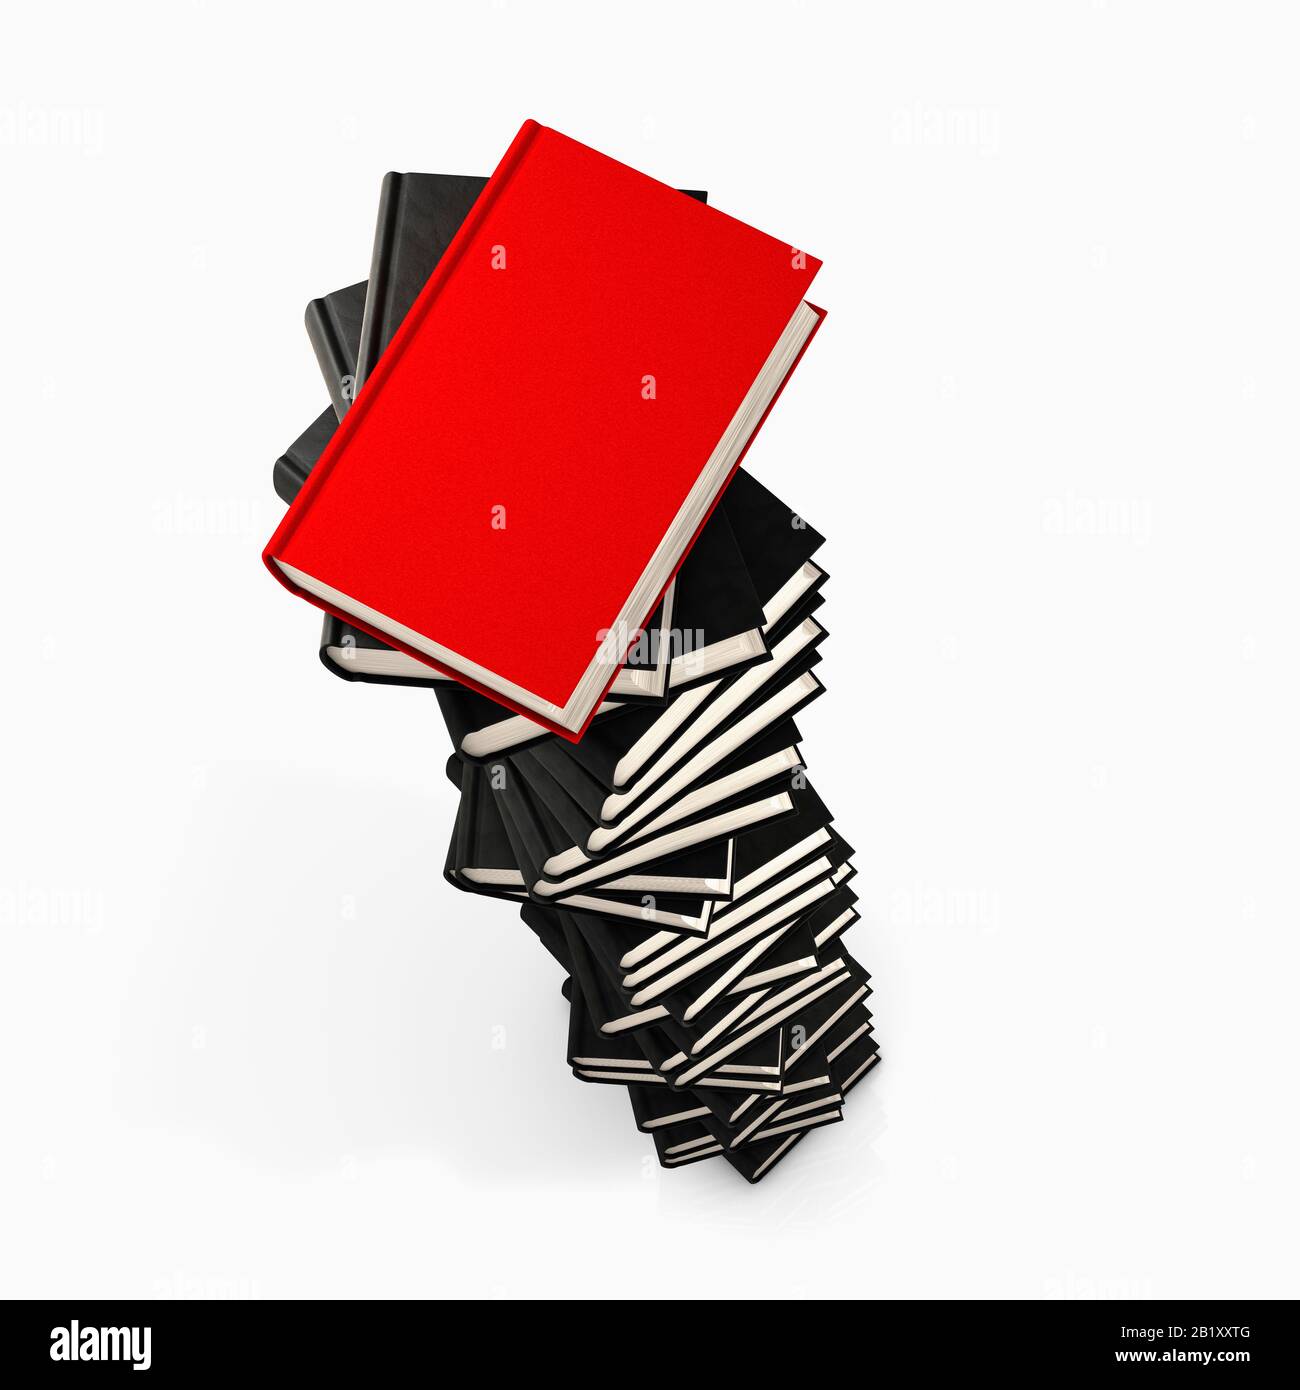 Großer Stapel von Büchern, Buchturm mit leeren schwarzen Einbänden, aber Top-Buch ist rot, Differenz oder Leistungskonzept Stockfoto